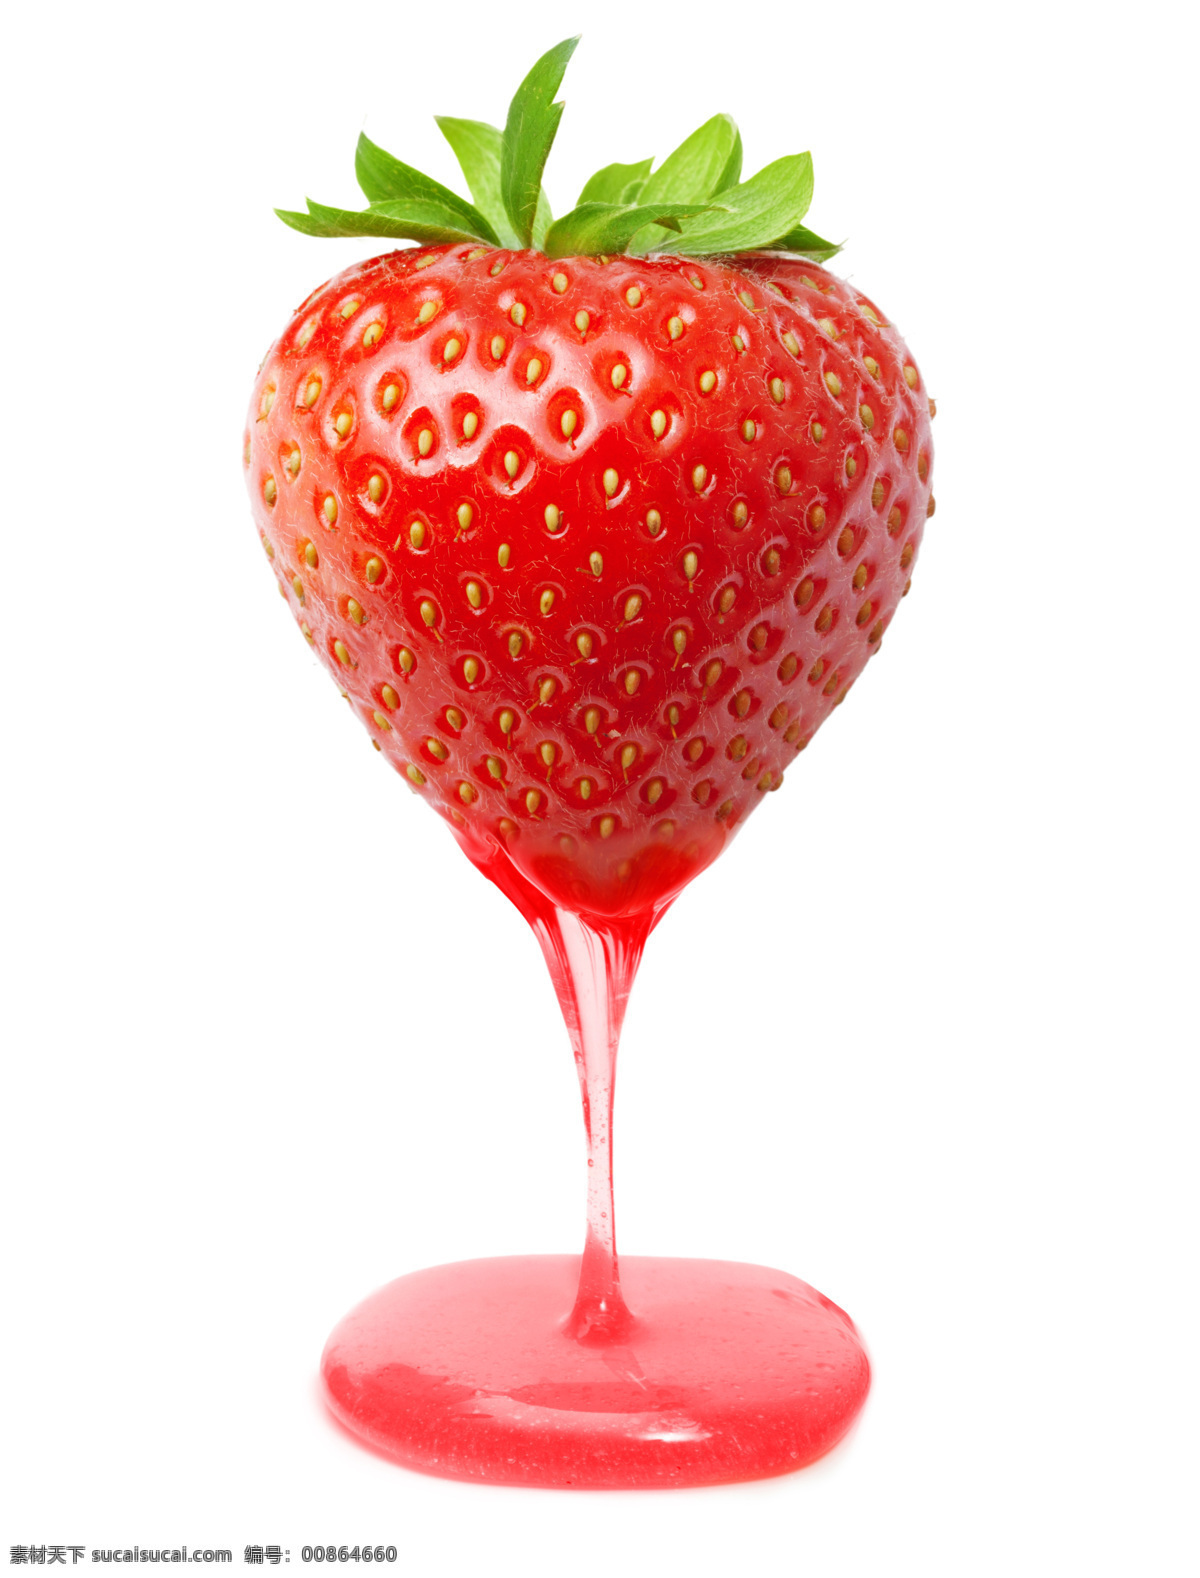 草莓与草莓酱 草莓果汁 草莓酱 新鲜水果 浆果 水果蔬菜 餐饮美食 白色